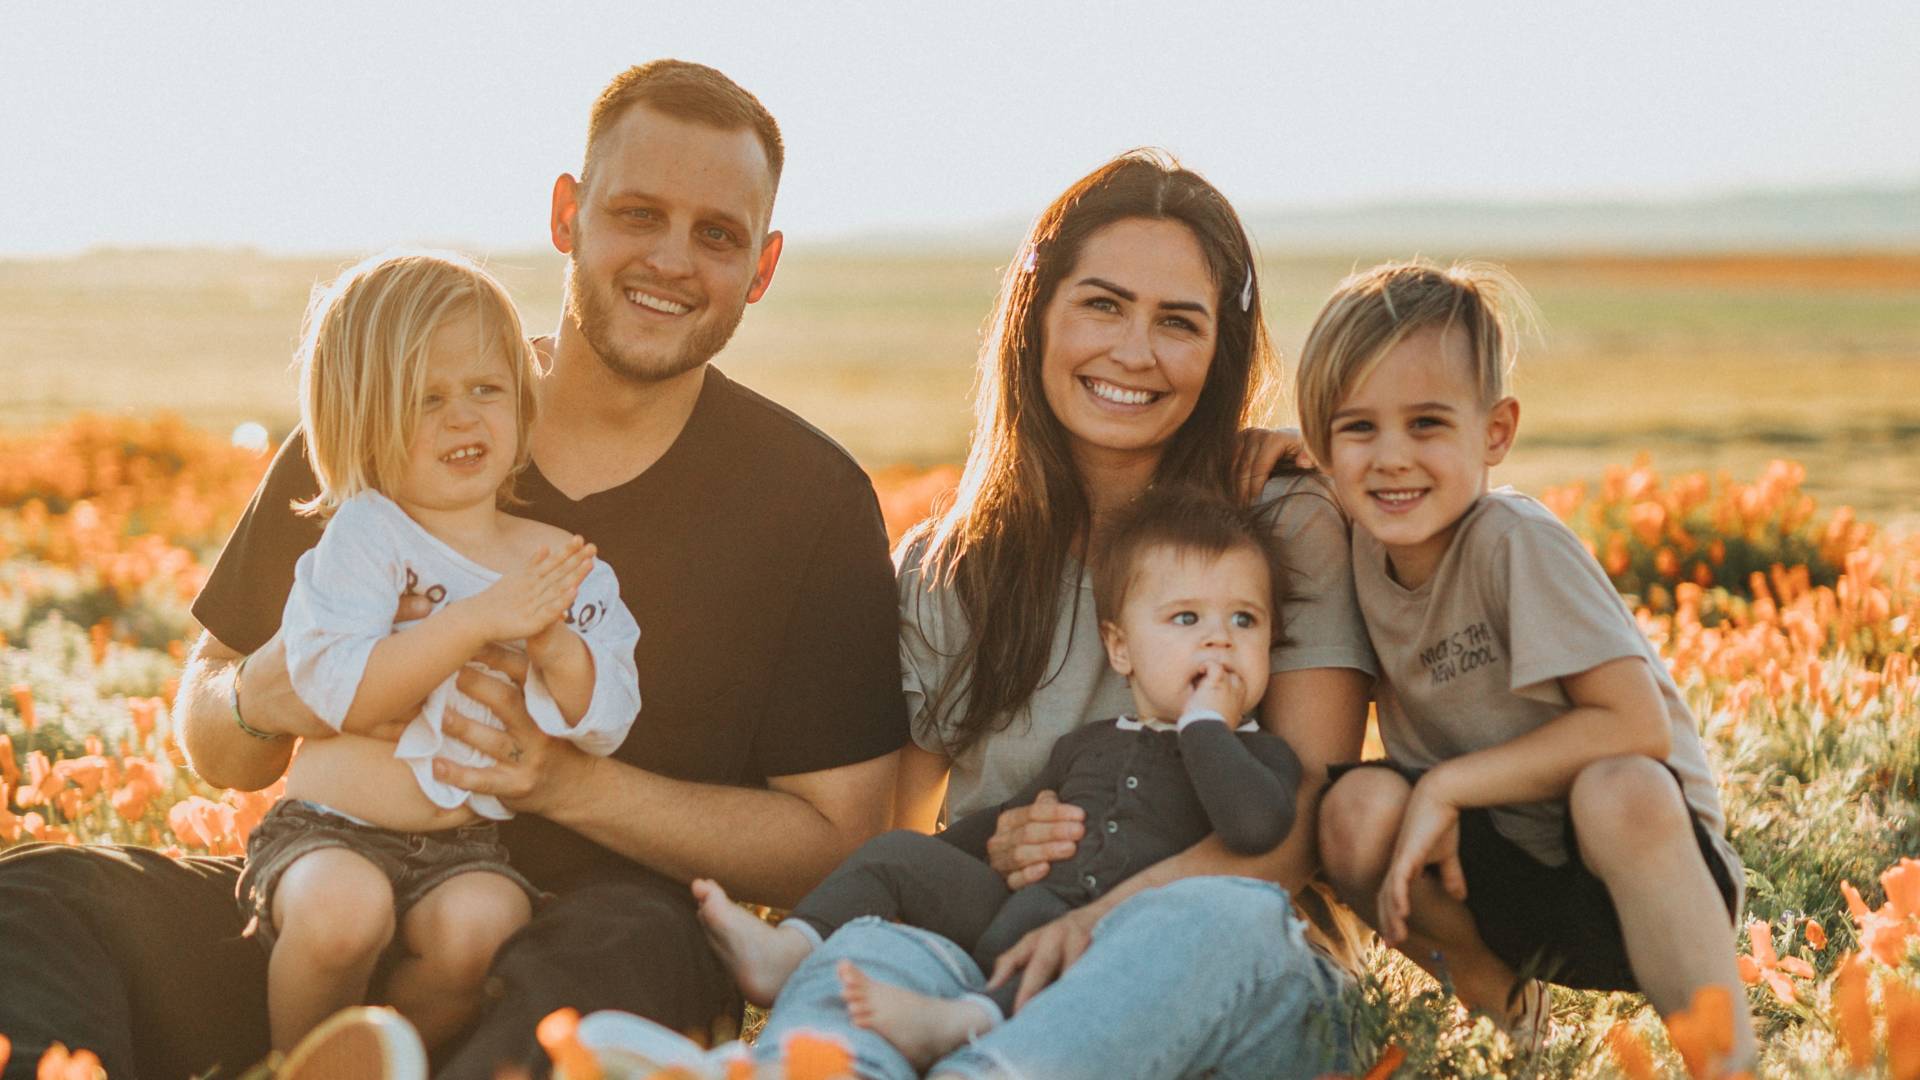 7 ways to live the faith as a family